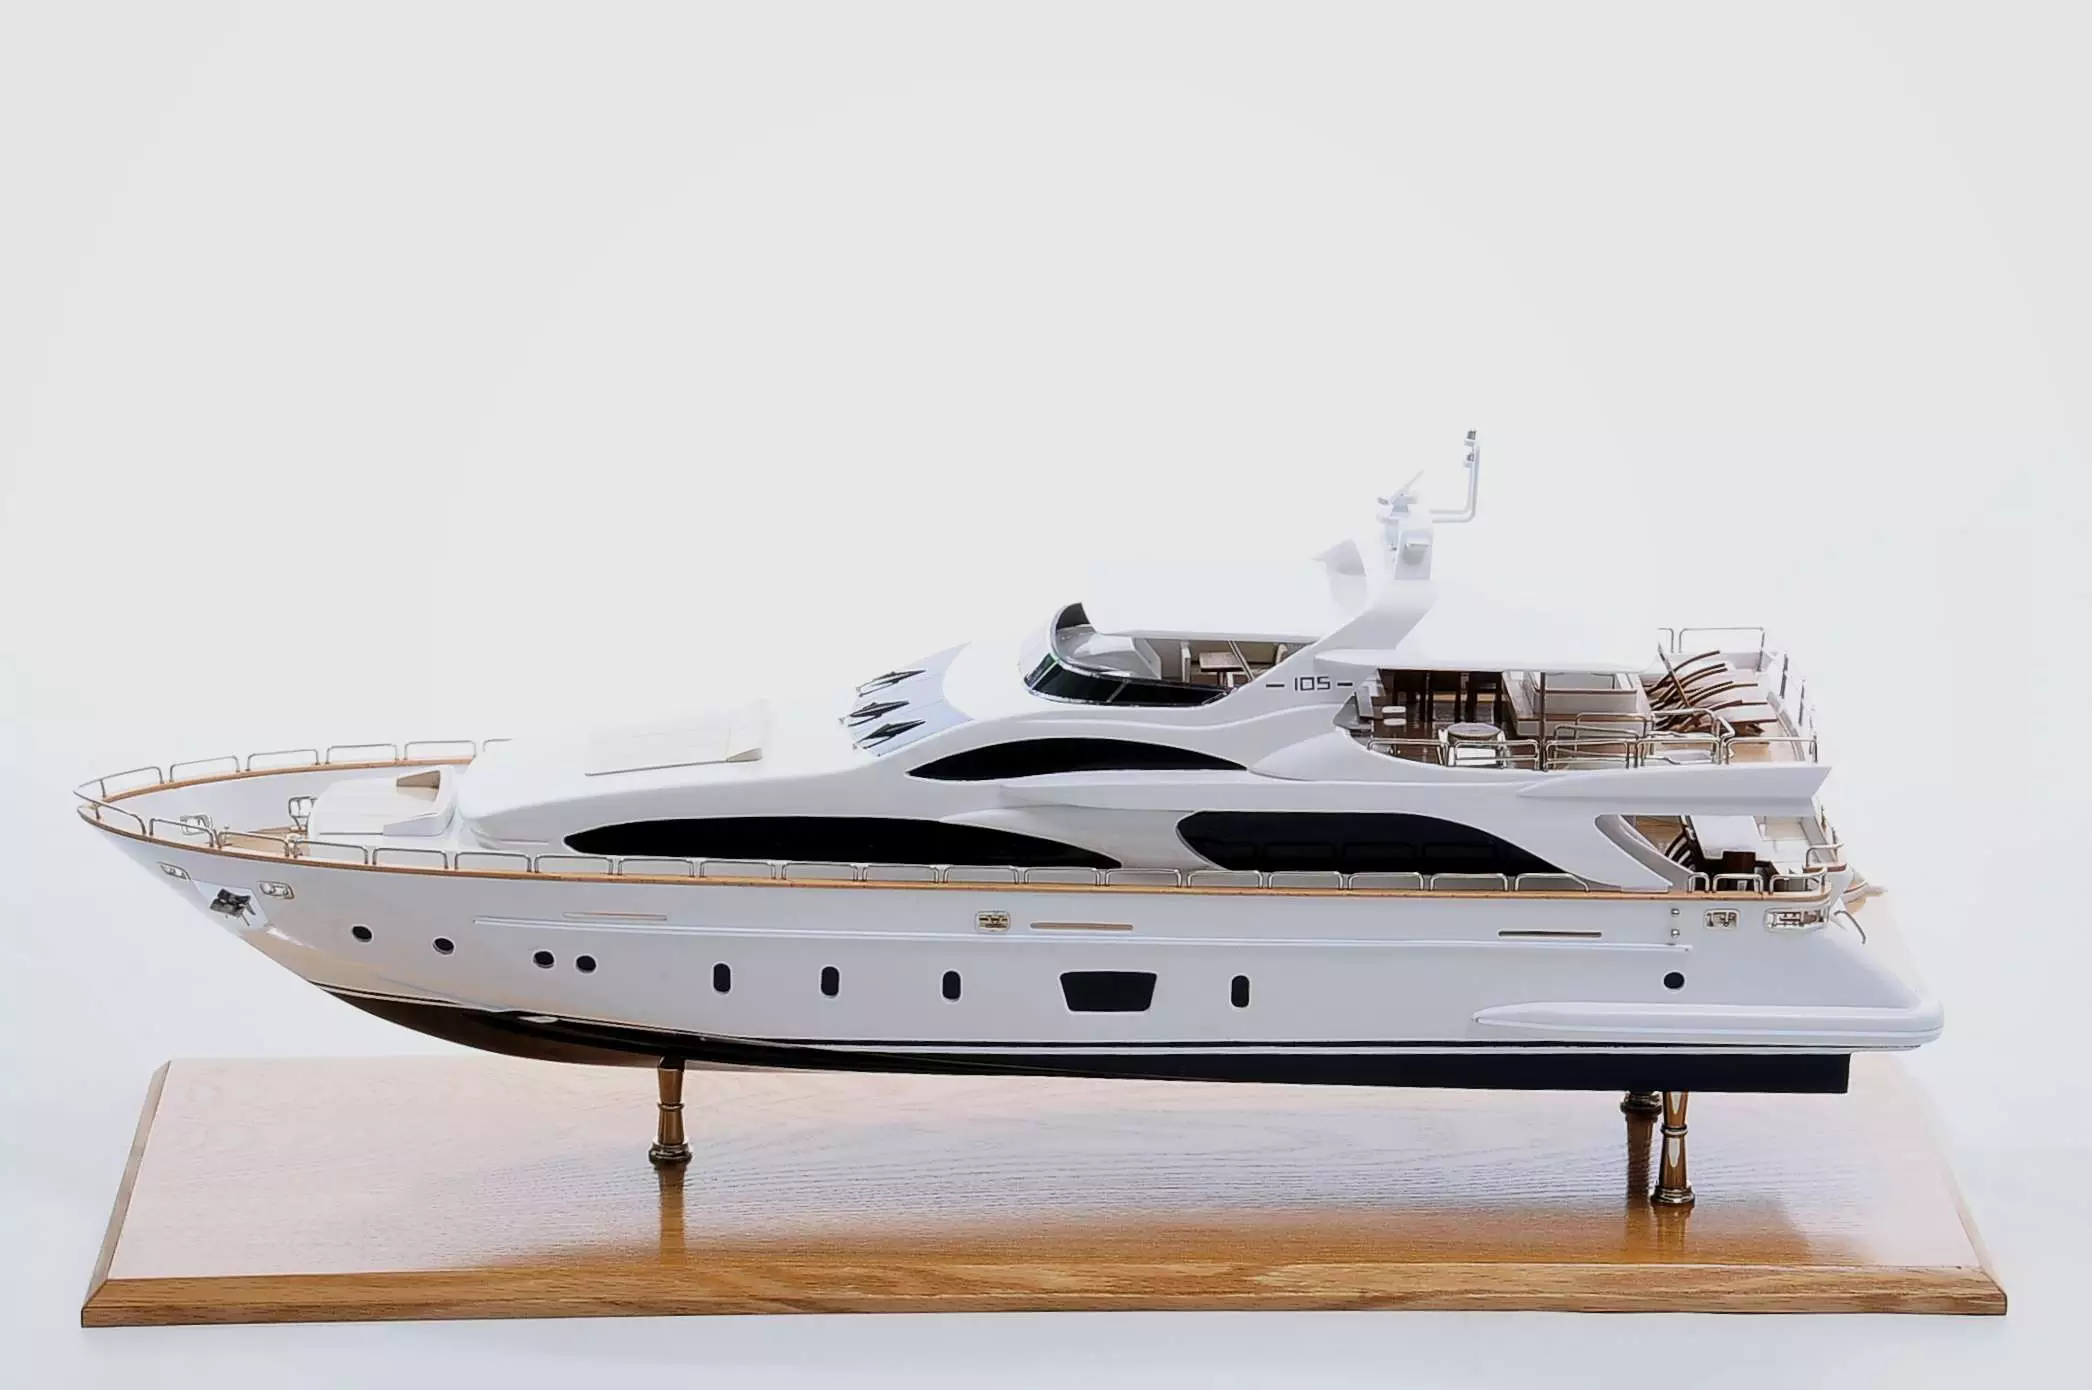 Antonia II Model Yacht